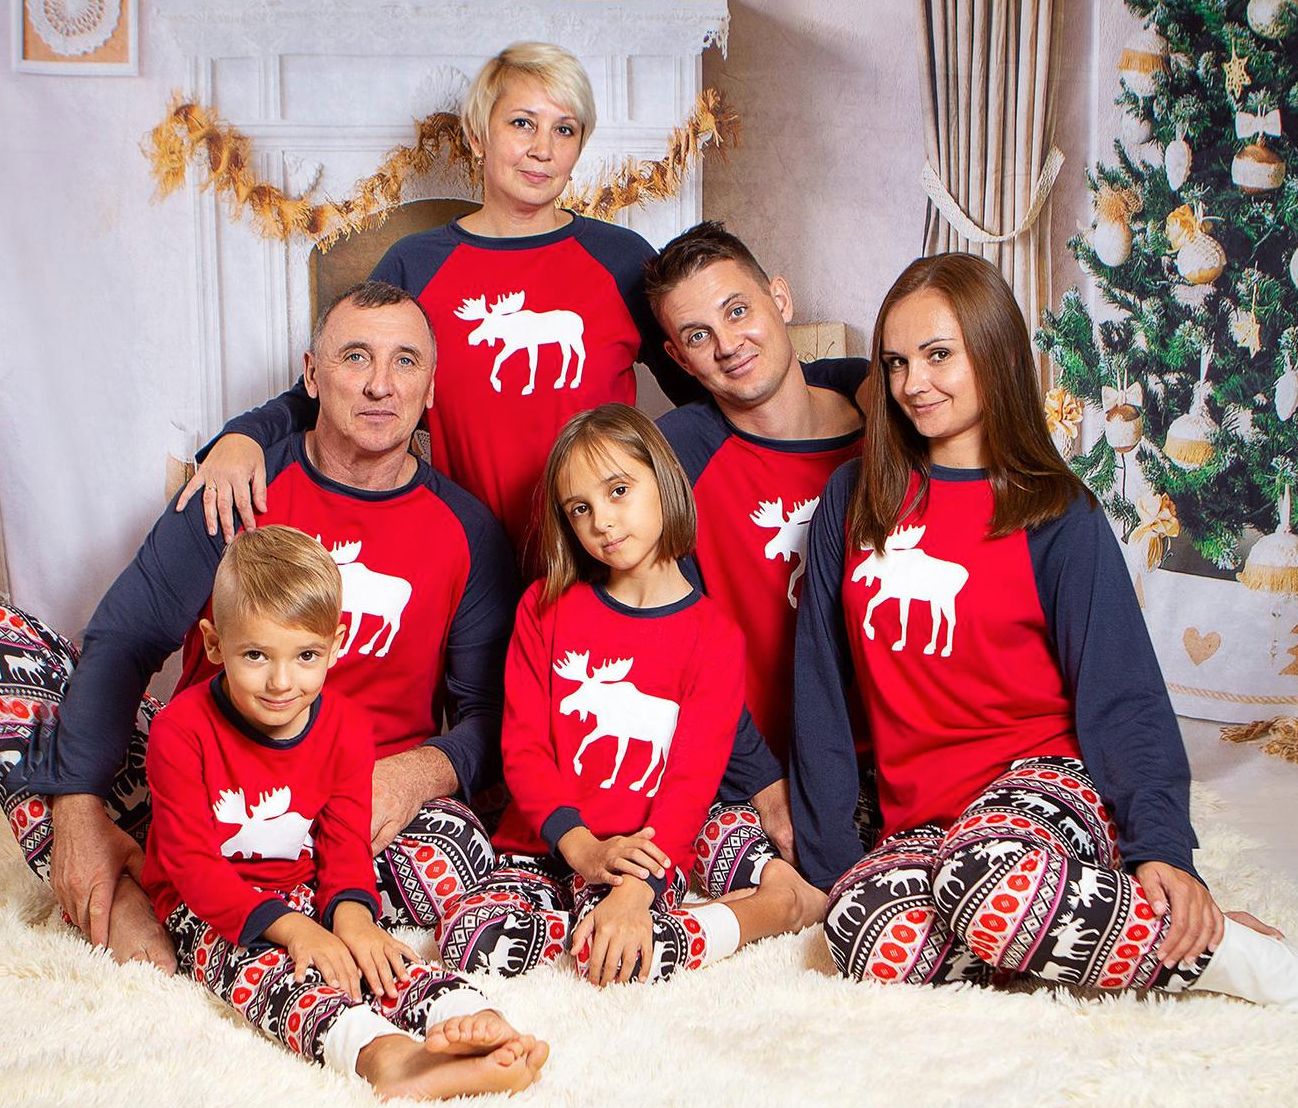 Ensemble pyjama familial de Noël d/'hiver chaud pour homme femme enfant bébé pyjama chaud pyjama de Noël ensemble pyjama pour costume de Noël